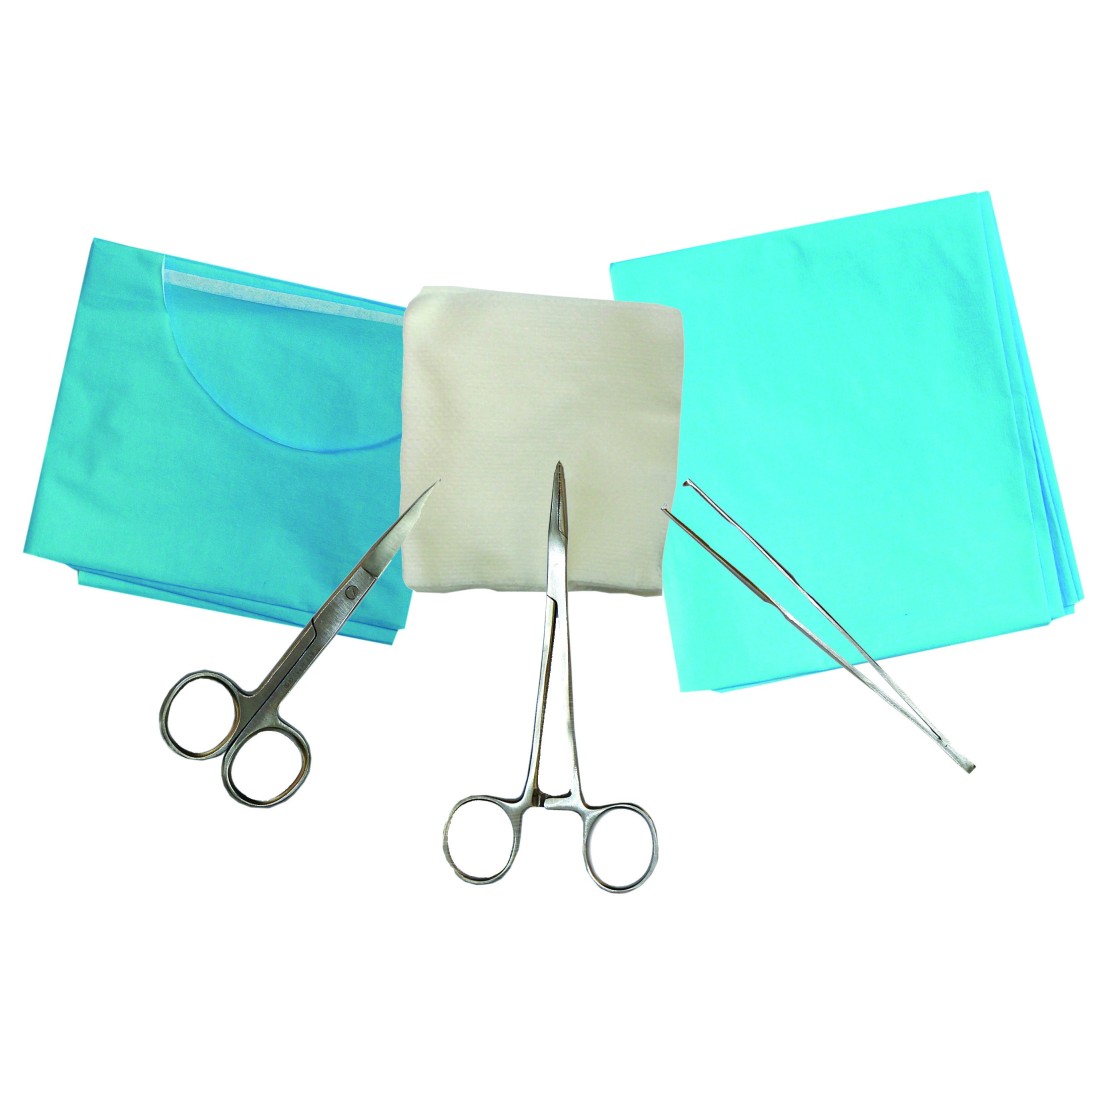 Trousse de formation aux sutures chirurgicales - Non vendu en magasin